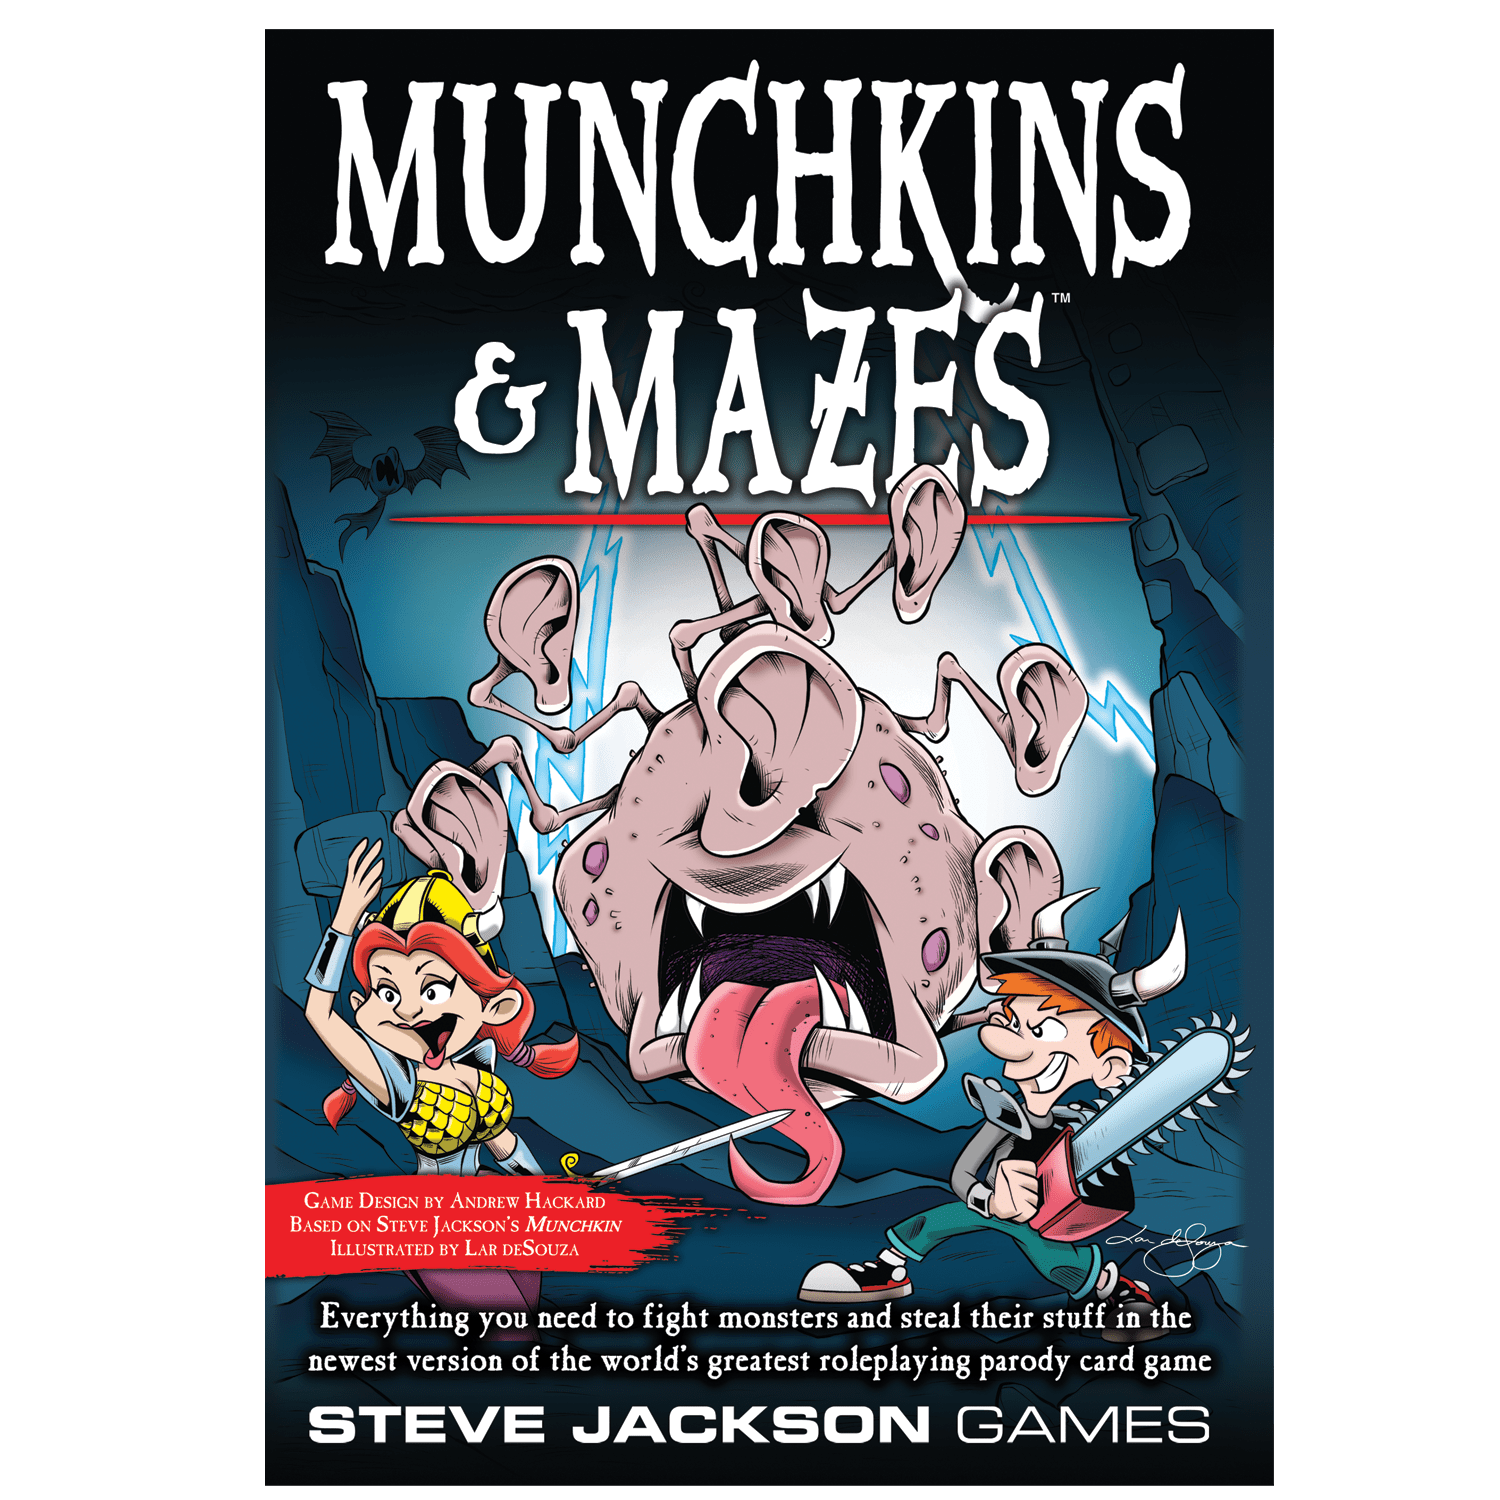 Munchkins & Mazes Alliance Games Board Games